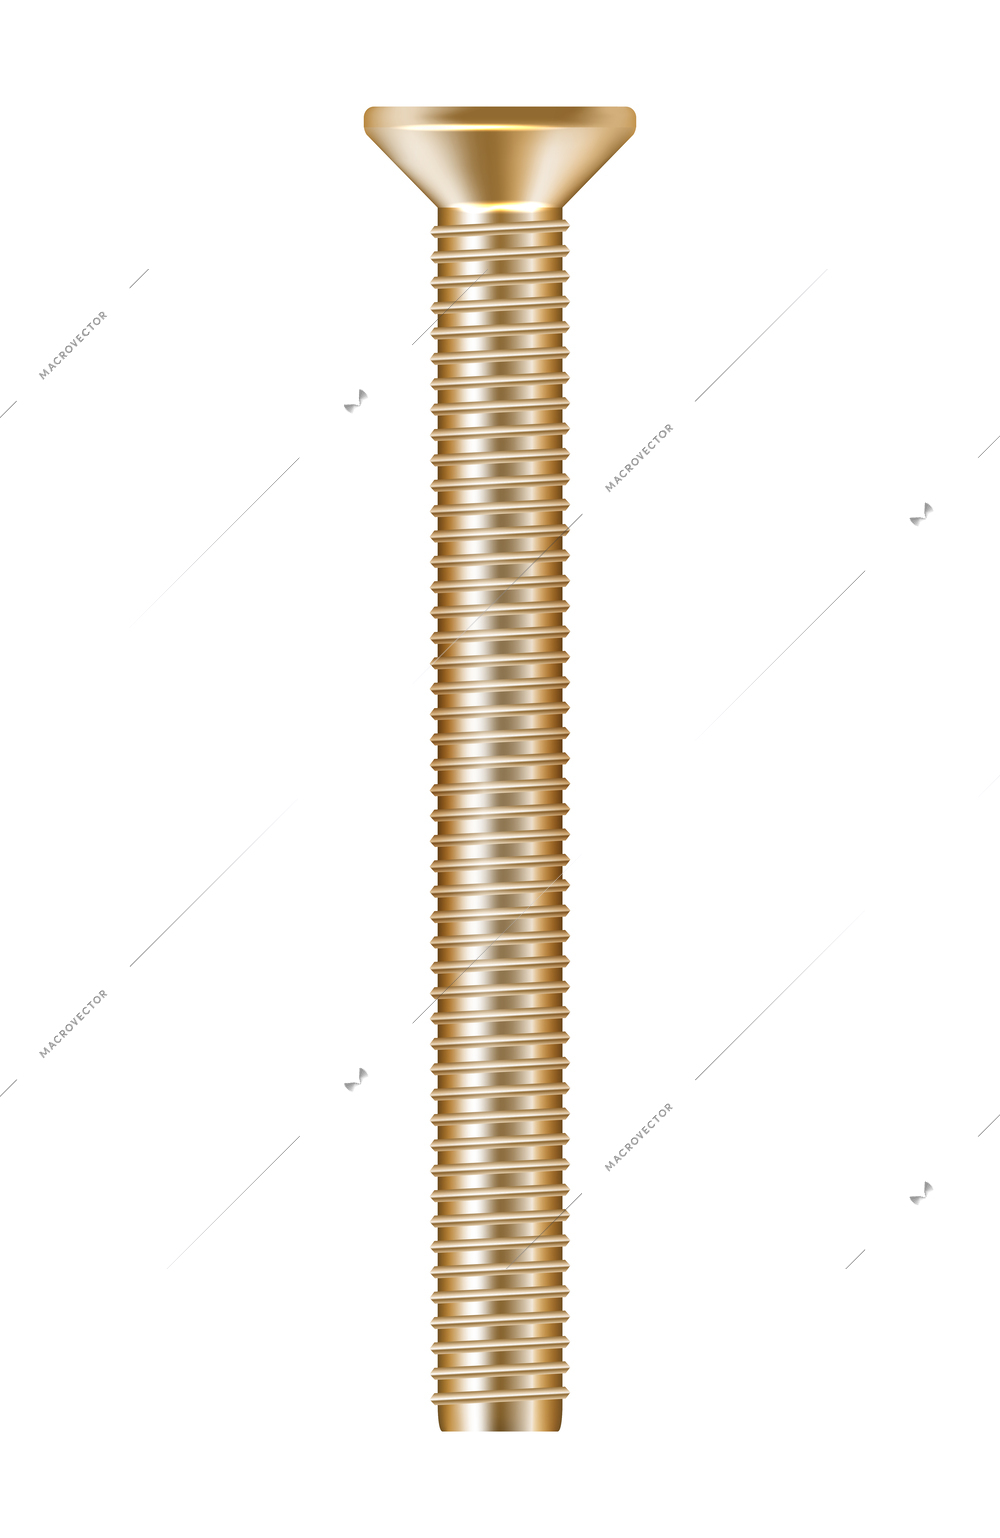 Realistic golden metal screw vector illustration